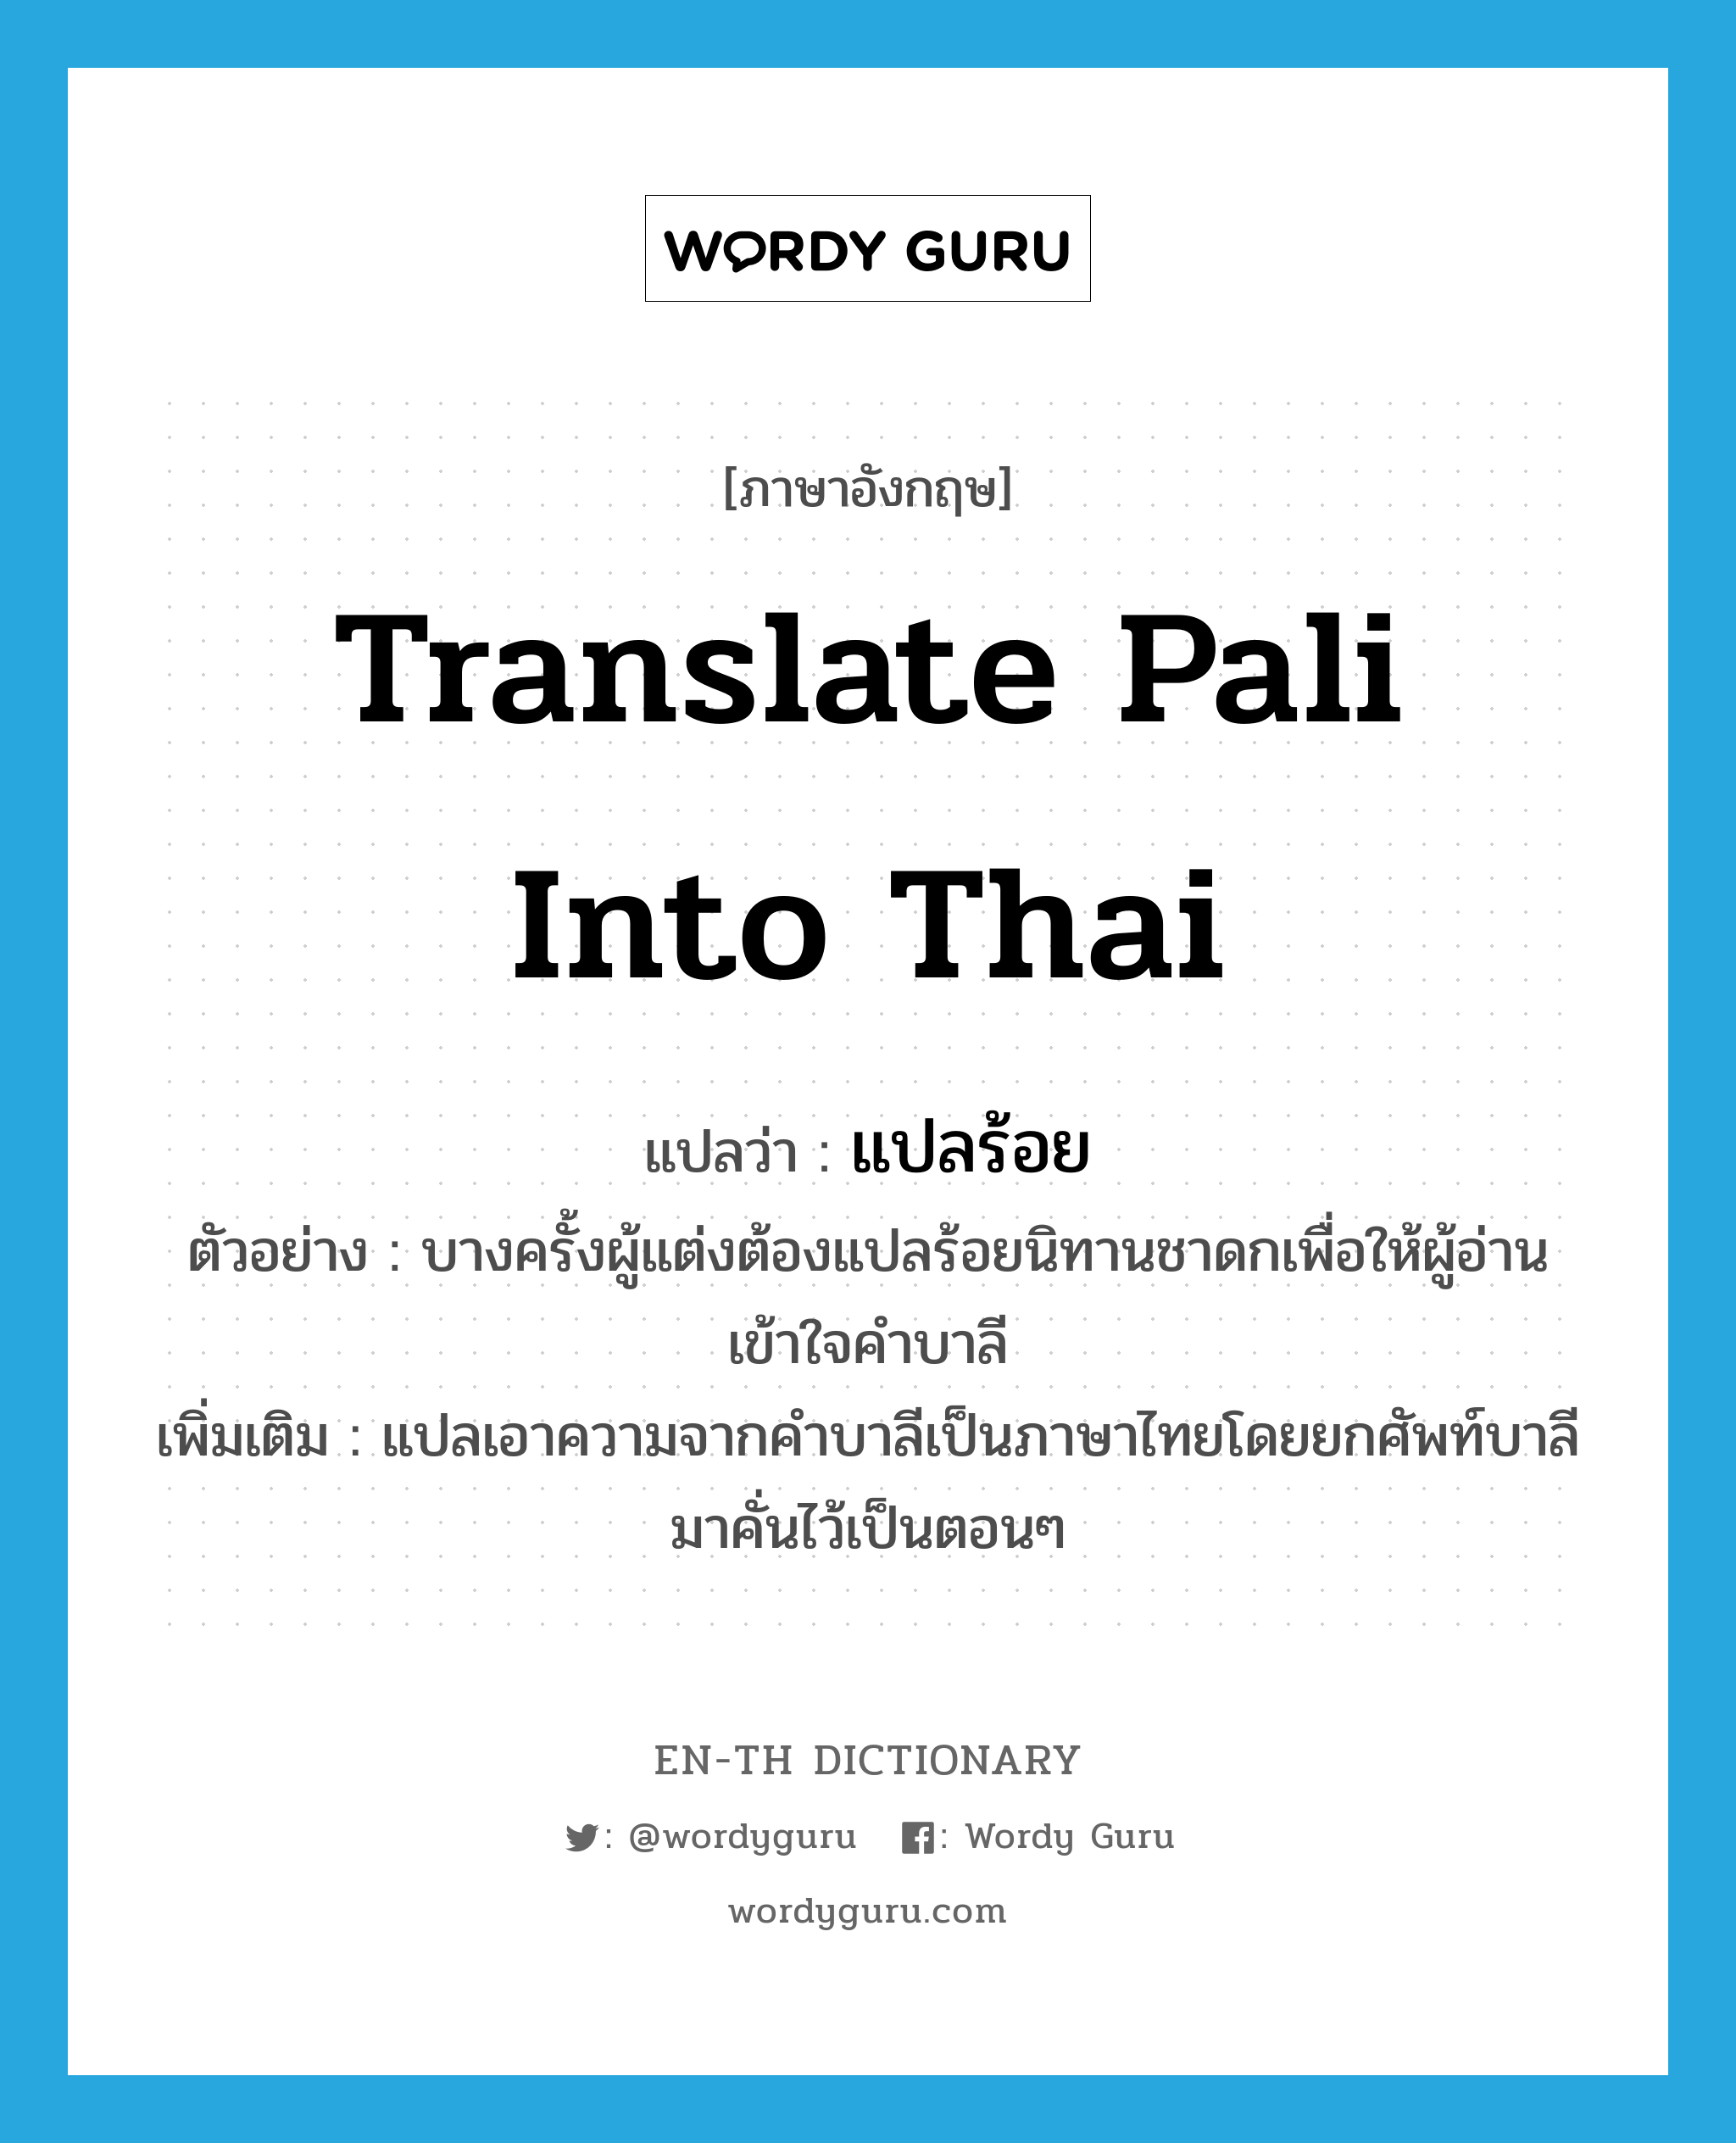 แปลร้อย ภาษาอังกฤษ?, คำศัพท์ภาษาอังกฤษ แปลร้อย แปลว่า translate Pali into Thai ประเภท V ตัวอย่าง บางครั้งผู้แต่งต้องแปลร้อยนิทานชาดกเพื่อให้ผู้อ่านเข้าใจคำบาลี เพิ่มเติม แปลเอาความจากคำบาลีเป็นภาษาไทยโดยยกศัพท์บาลีมาคั่นไว้เป็นตอนๆ หมวด V